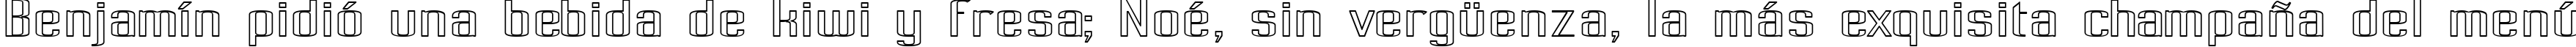 Пример написания шрифтом Pecot Outline текста на испанском